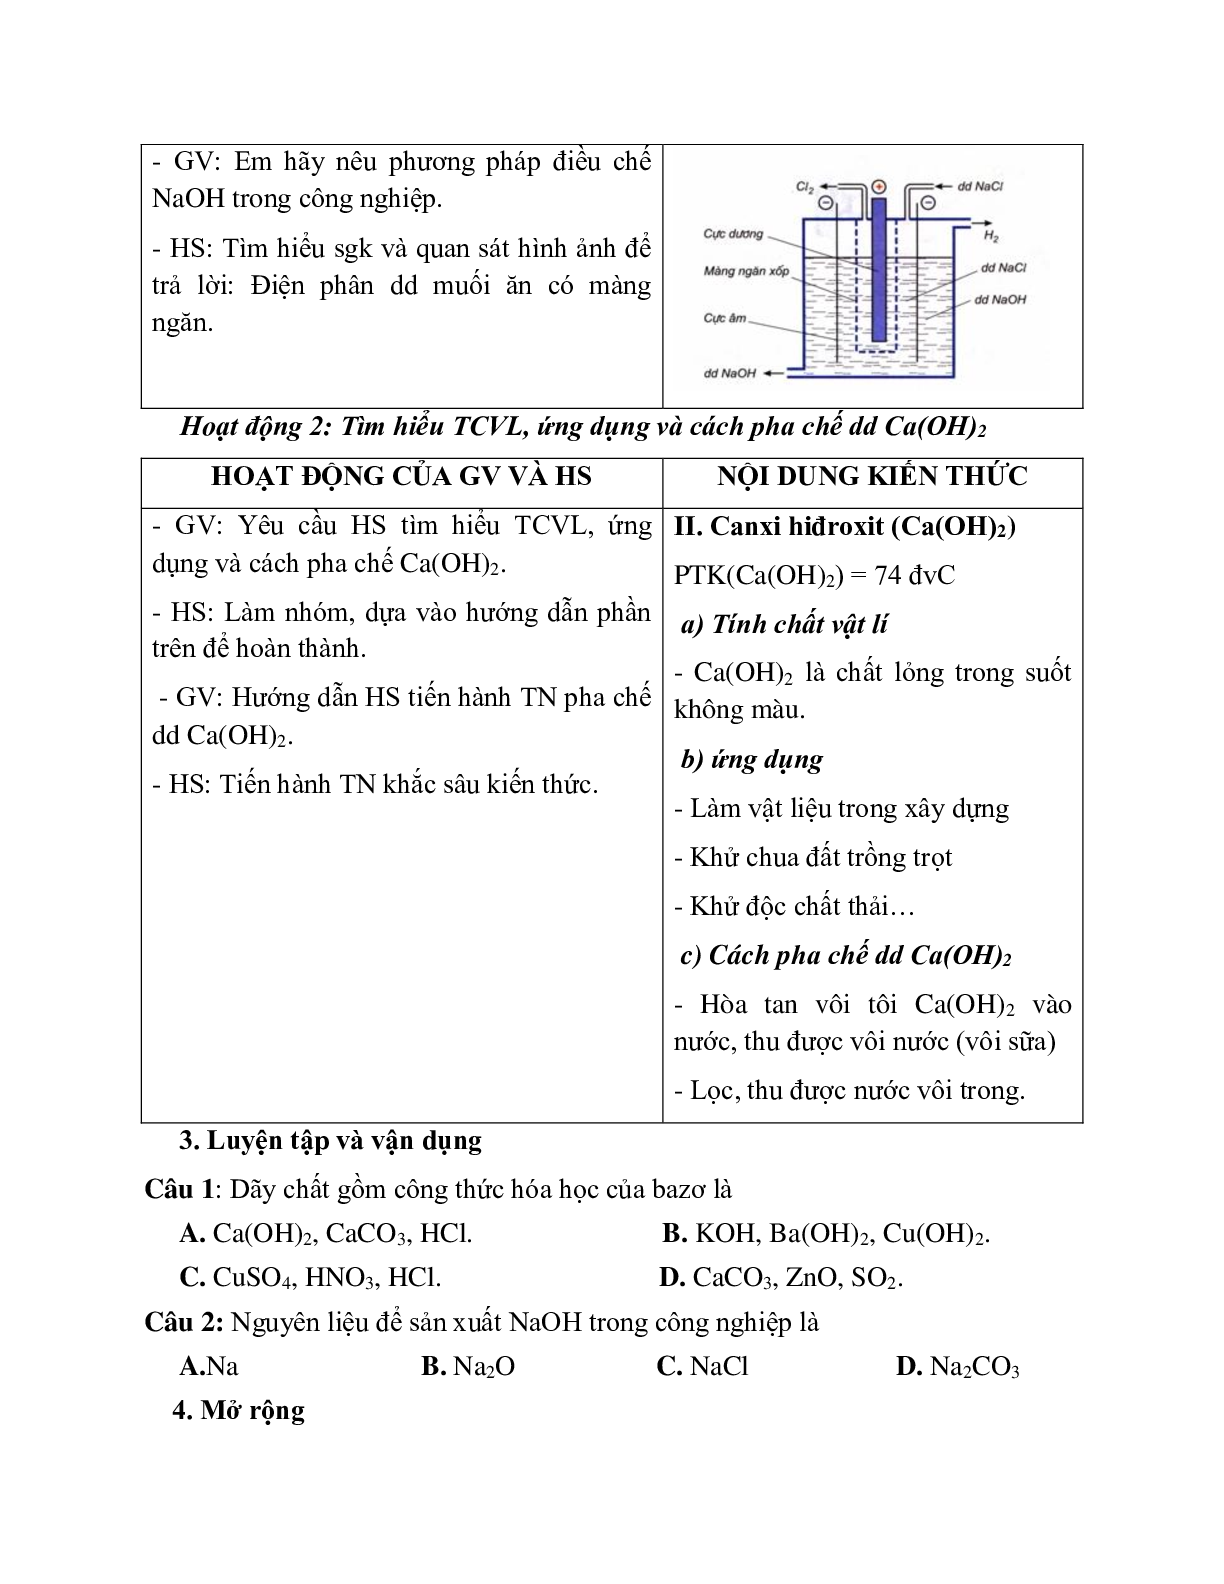 Giáo án hóa học 9 chủ đề bazo mới nhất (trang 6)